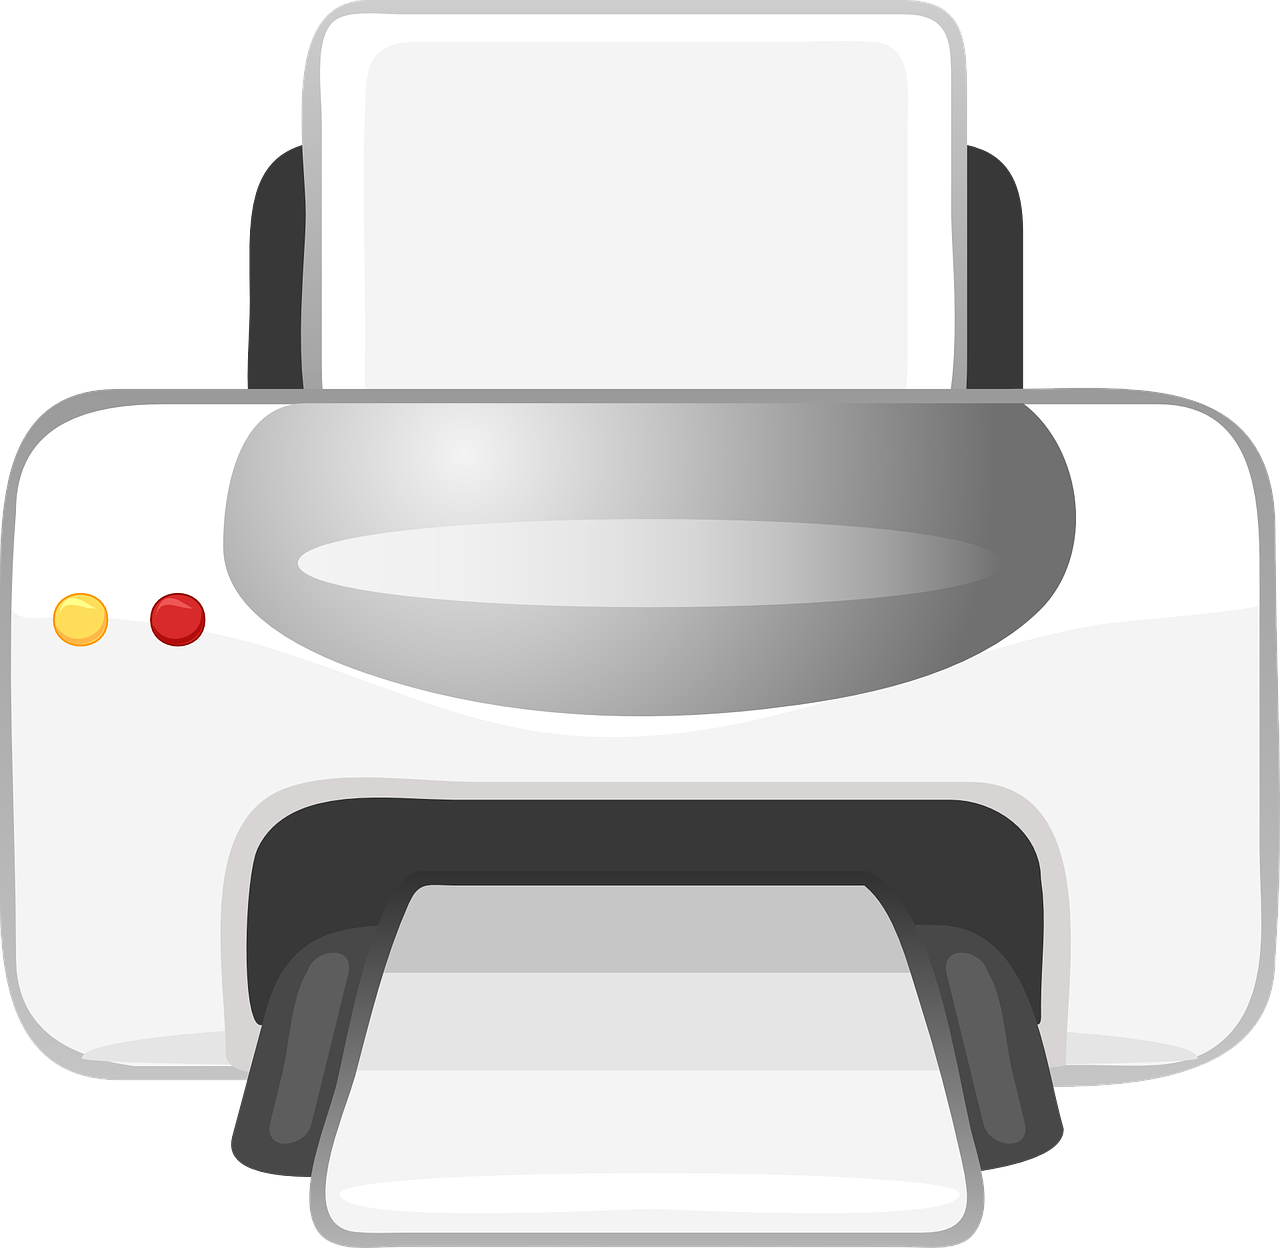 Come inviare fax online da PC e smartphone Android e iPhone